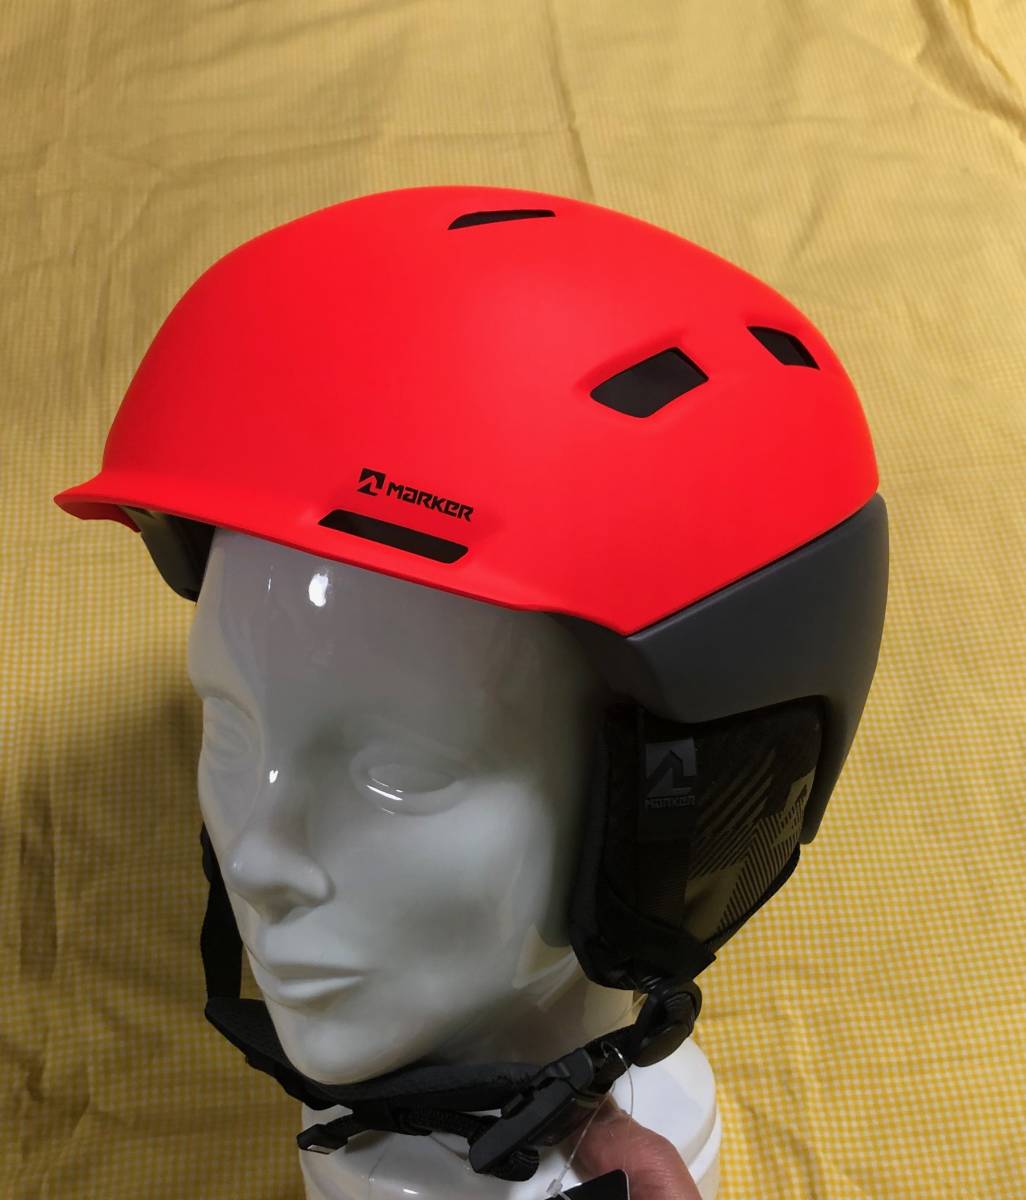 【即決】新品・未使用MARKER AMPIRE グレーインフラレッド マーカーヘルメット ダイヤル調節軽量高性能モデル Mサイズ47%OFF _画像1